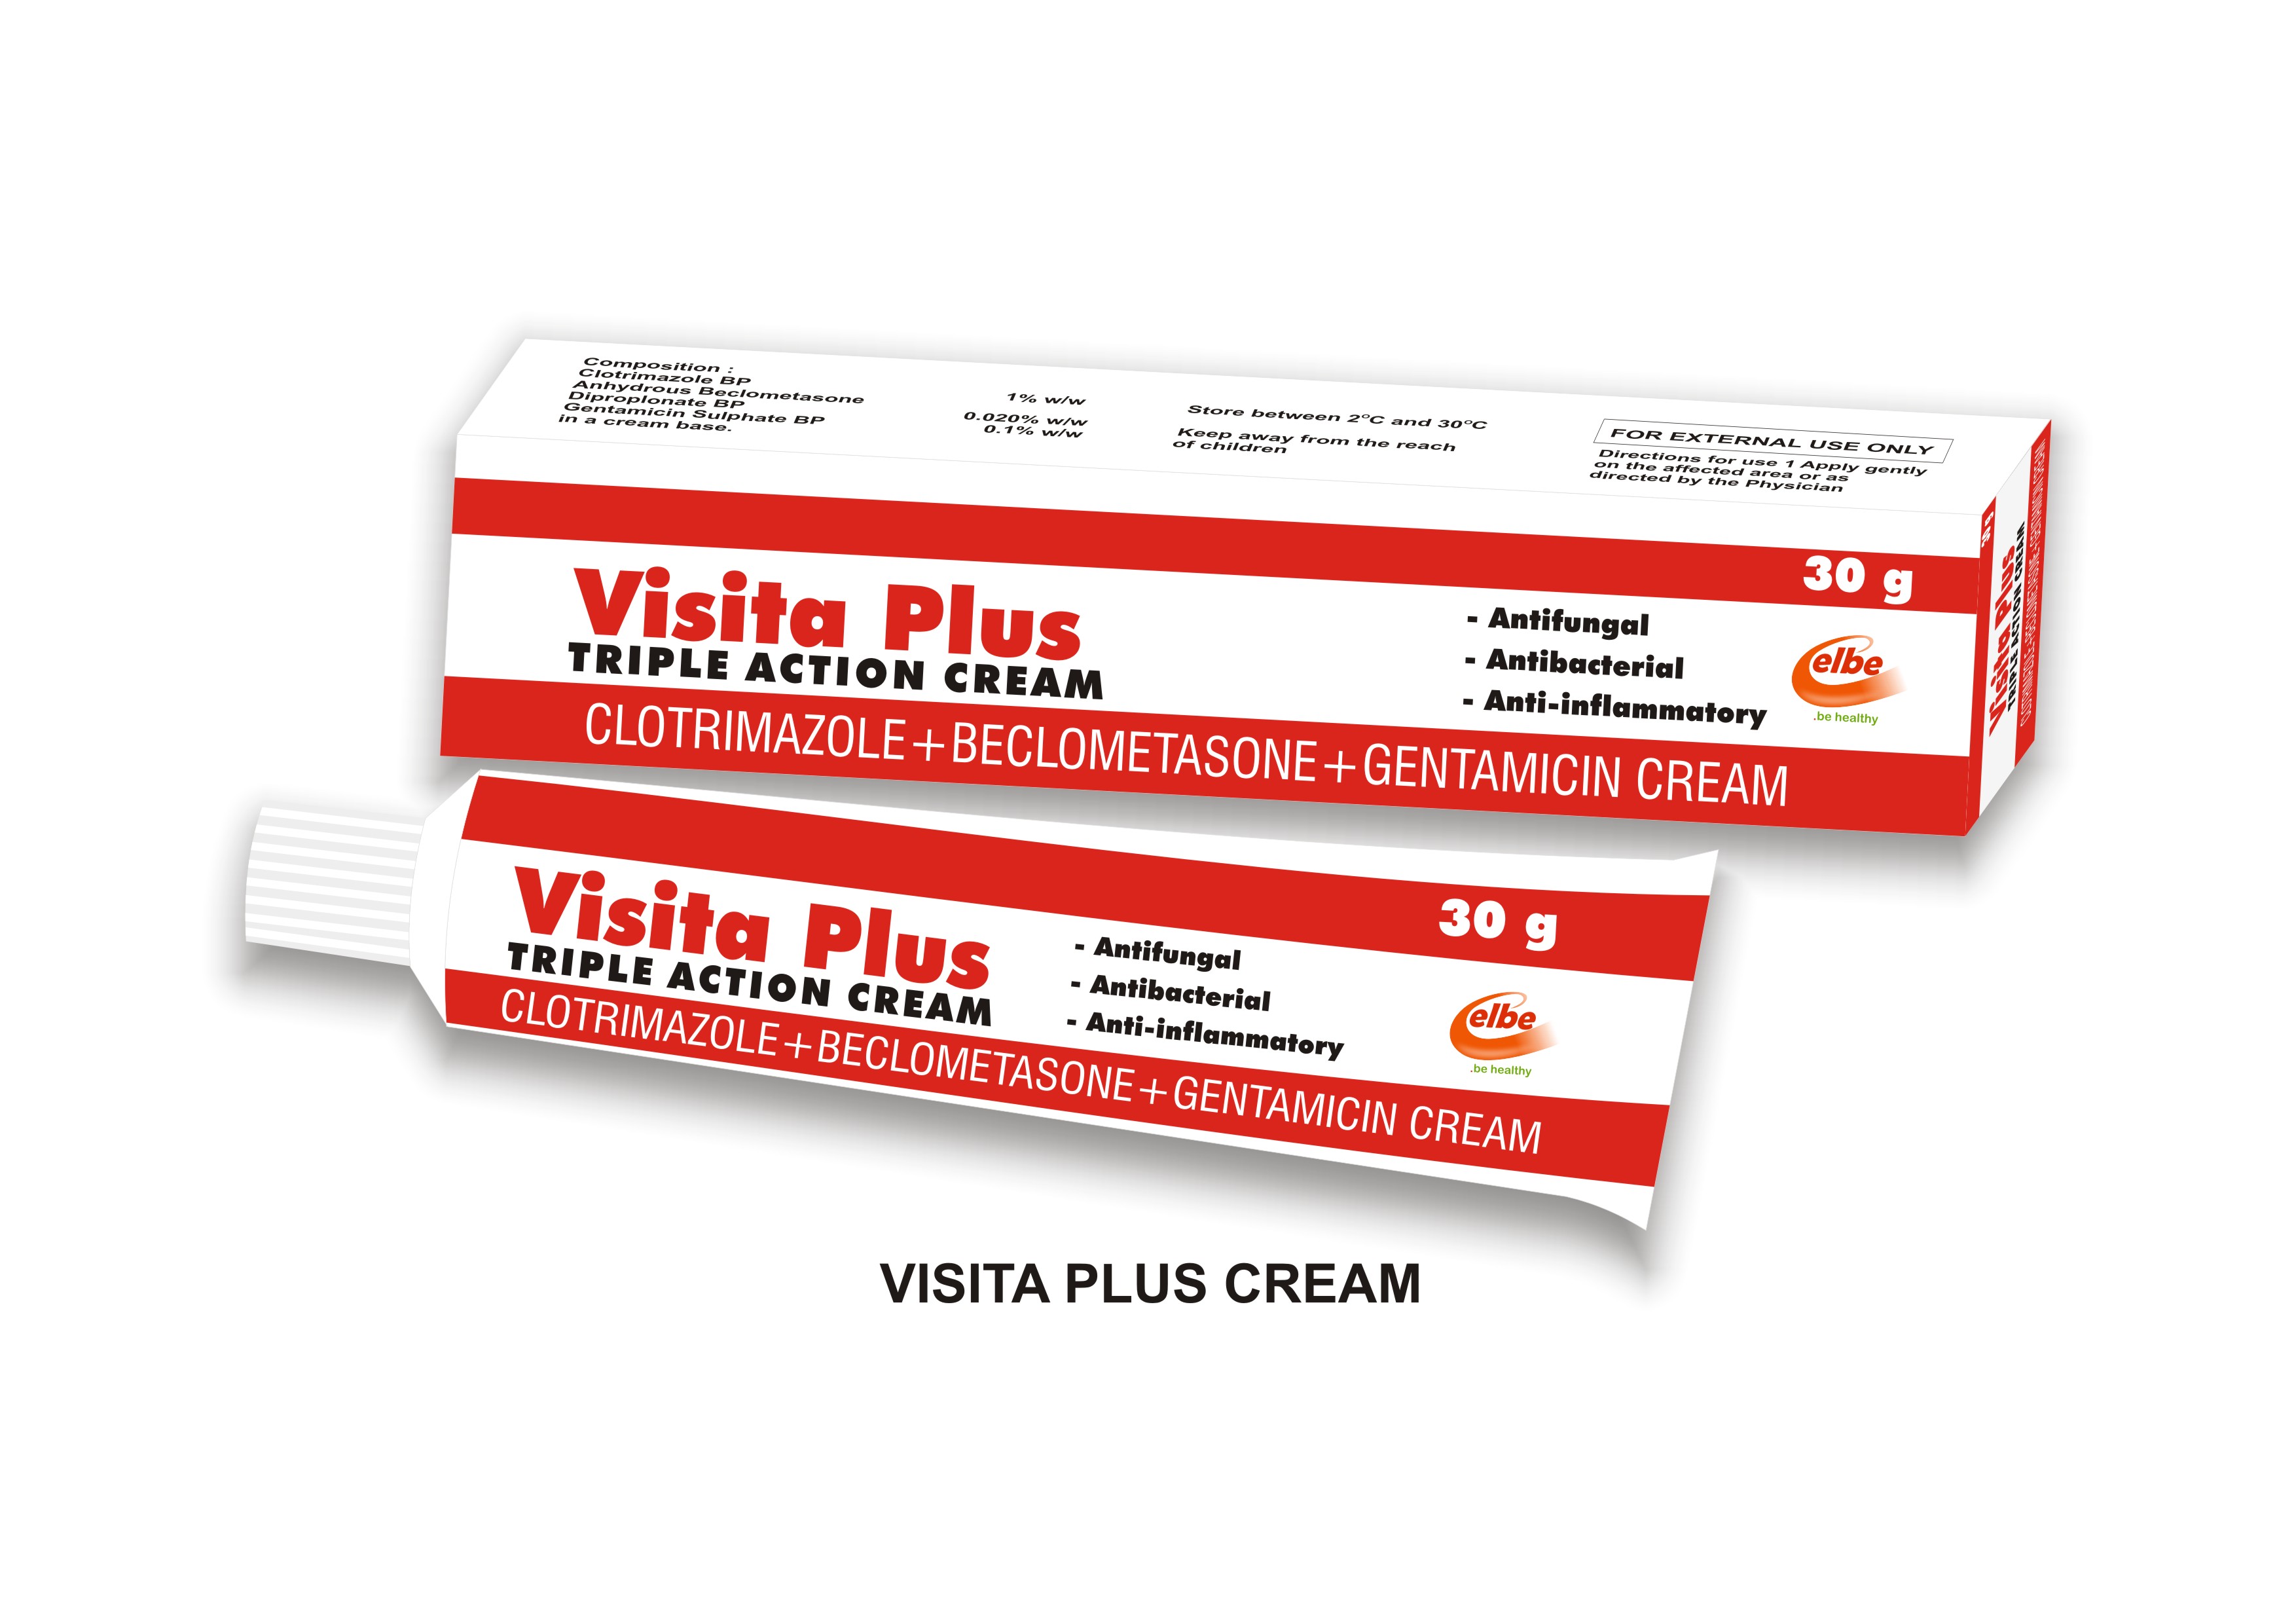 Does Visita Plus Cream Lighten the Skin